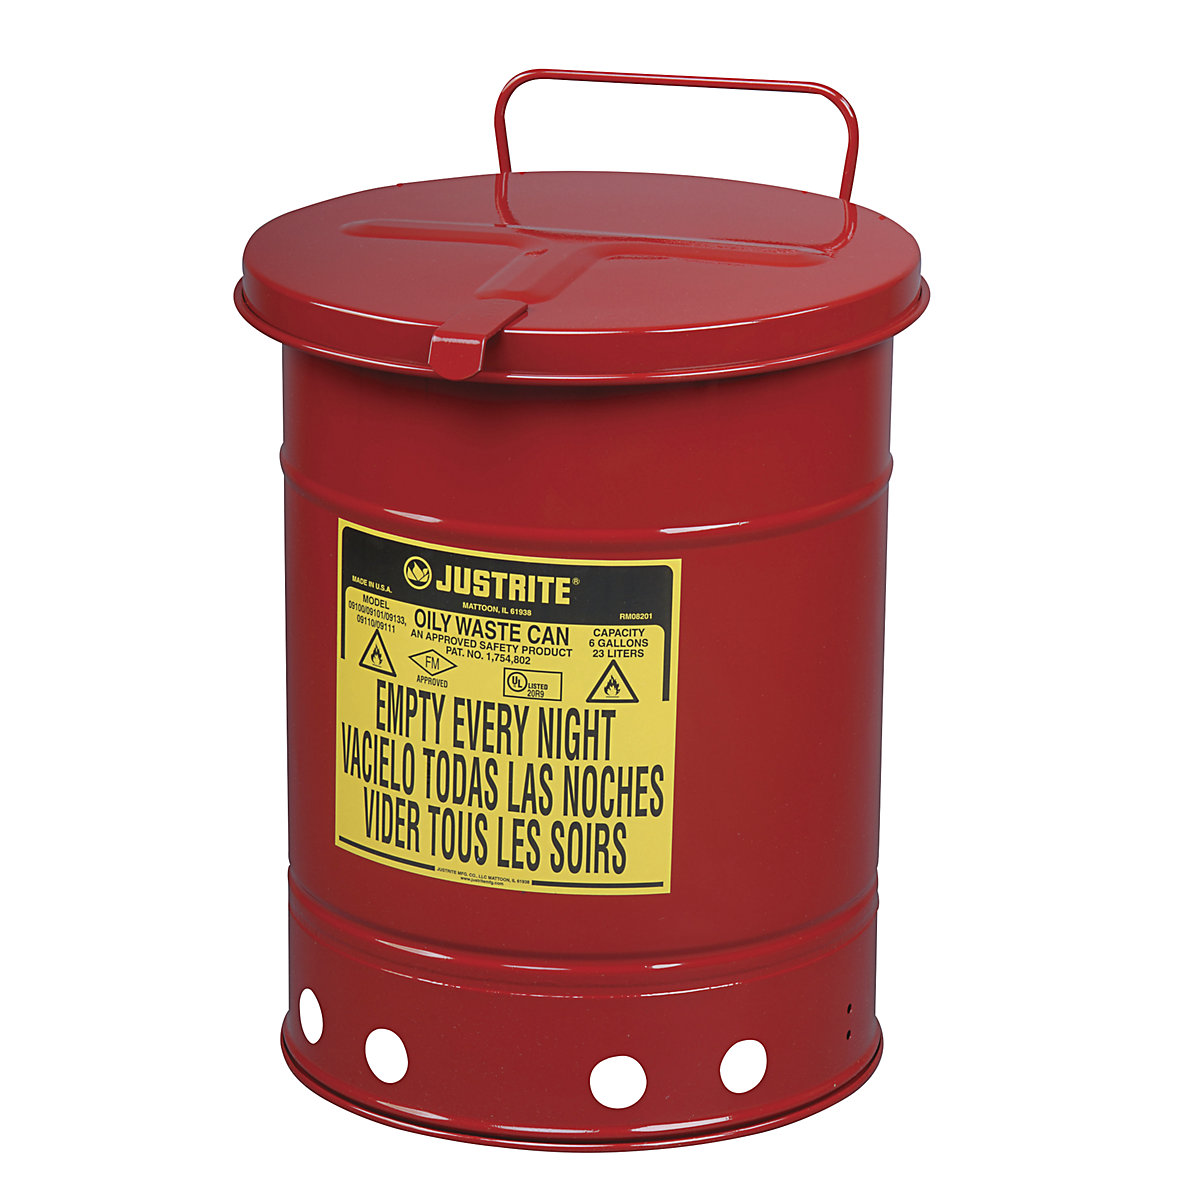 Recipiente de segurança para resíduos em chapa de aço – Justrite, redondo, com comando manual, volume 80 l-4